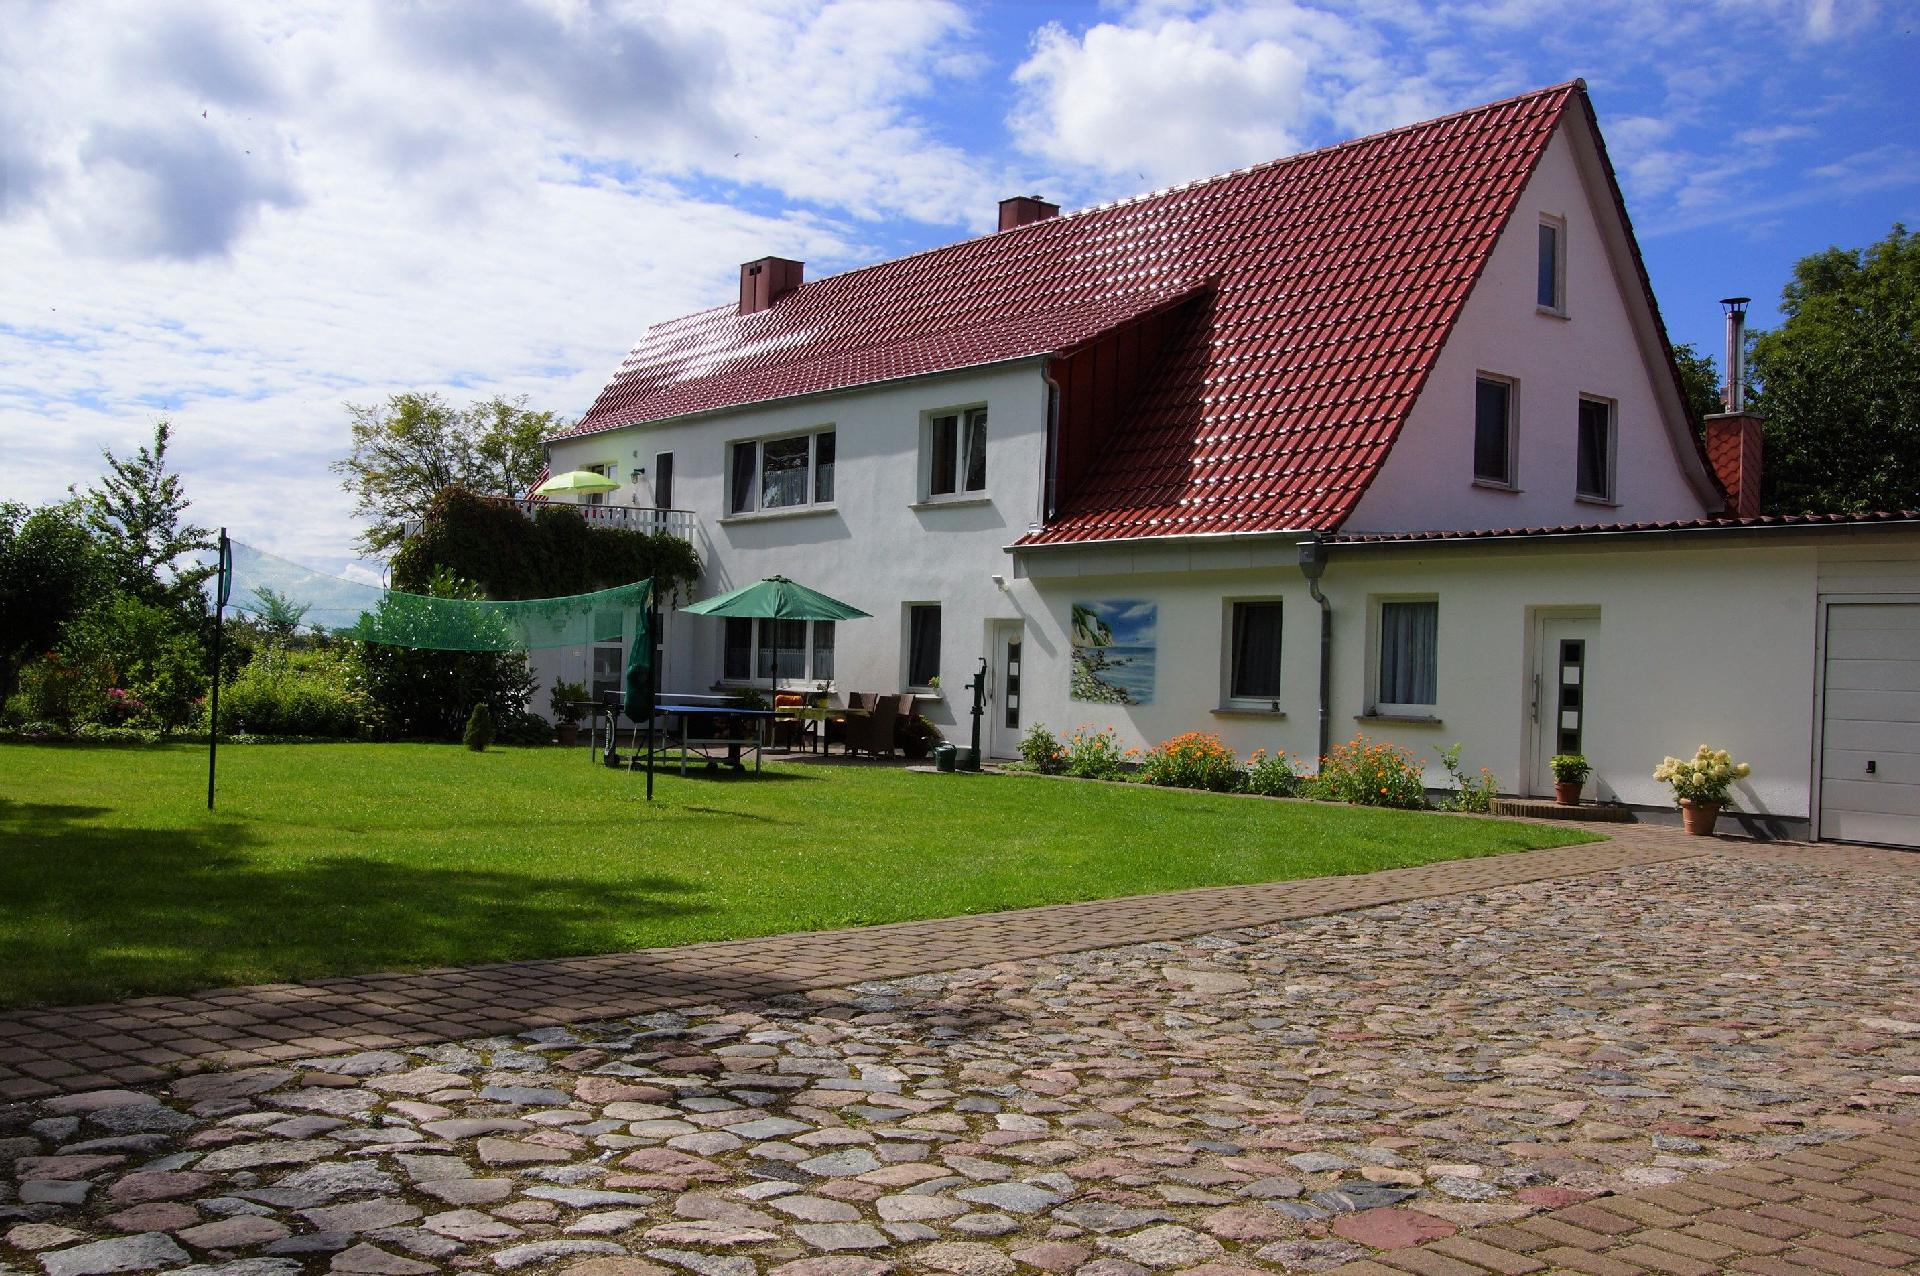 Schöne Wohnung bei Bergen auzf Rügen mit Ferienwohnung an der Ostsee